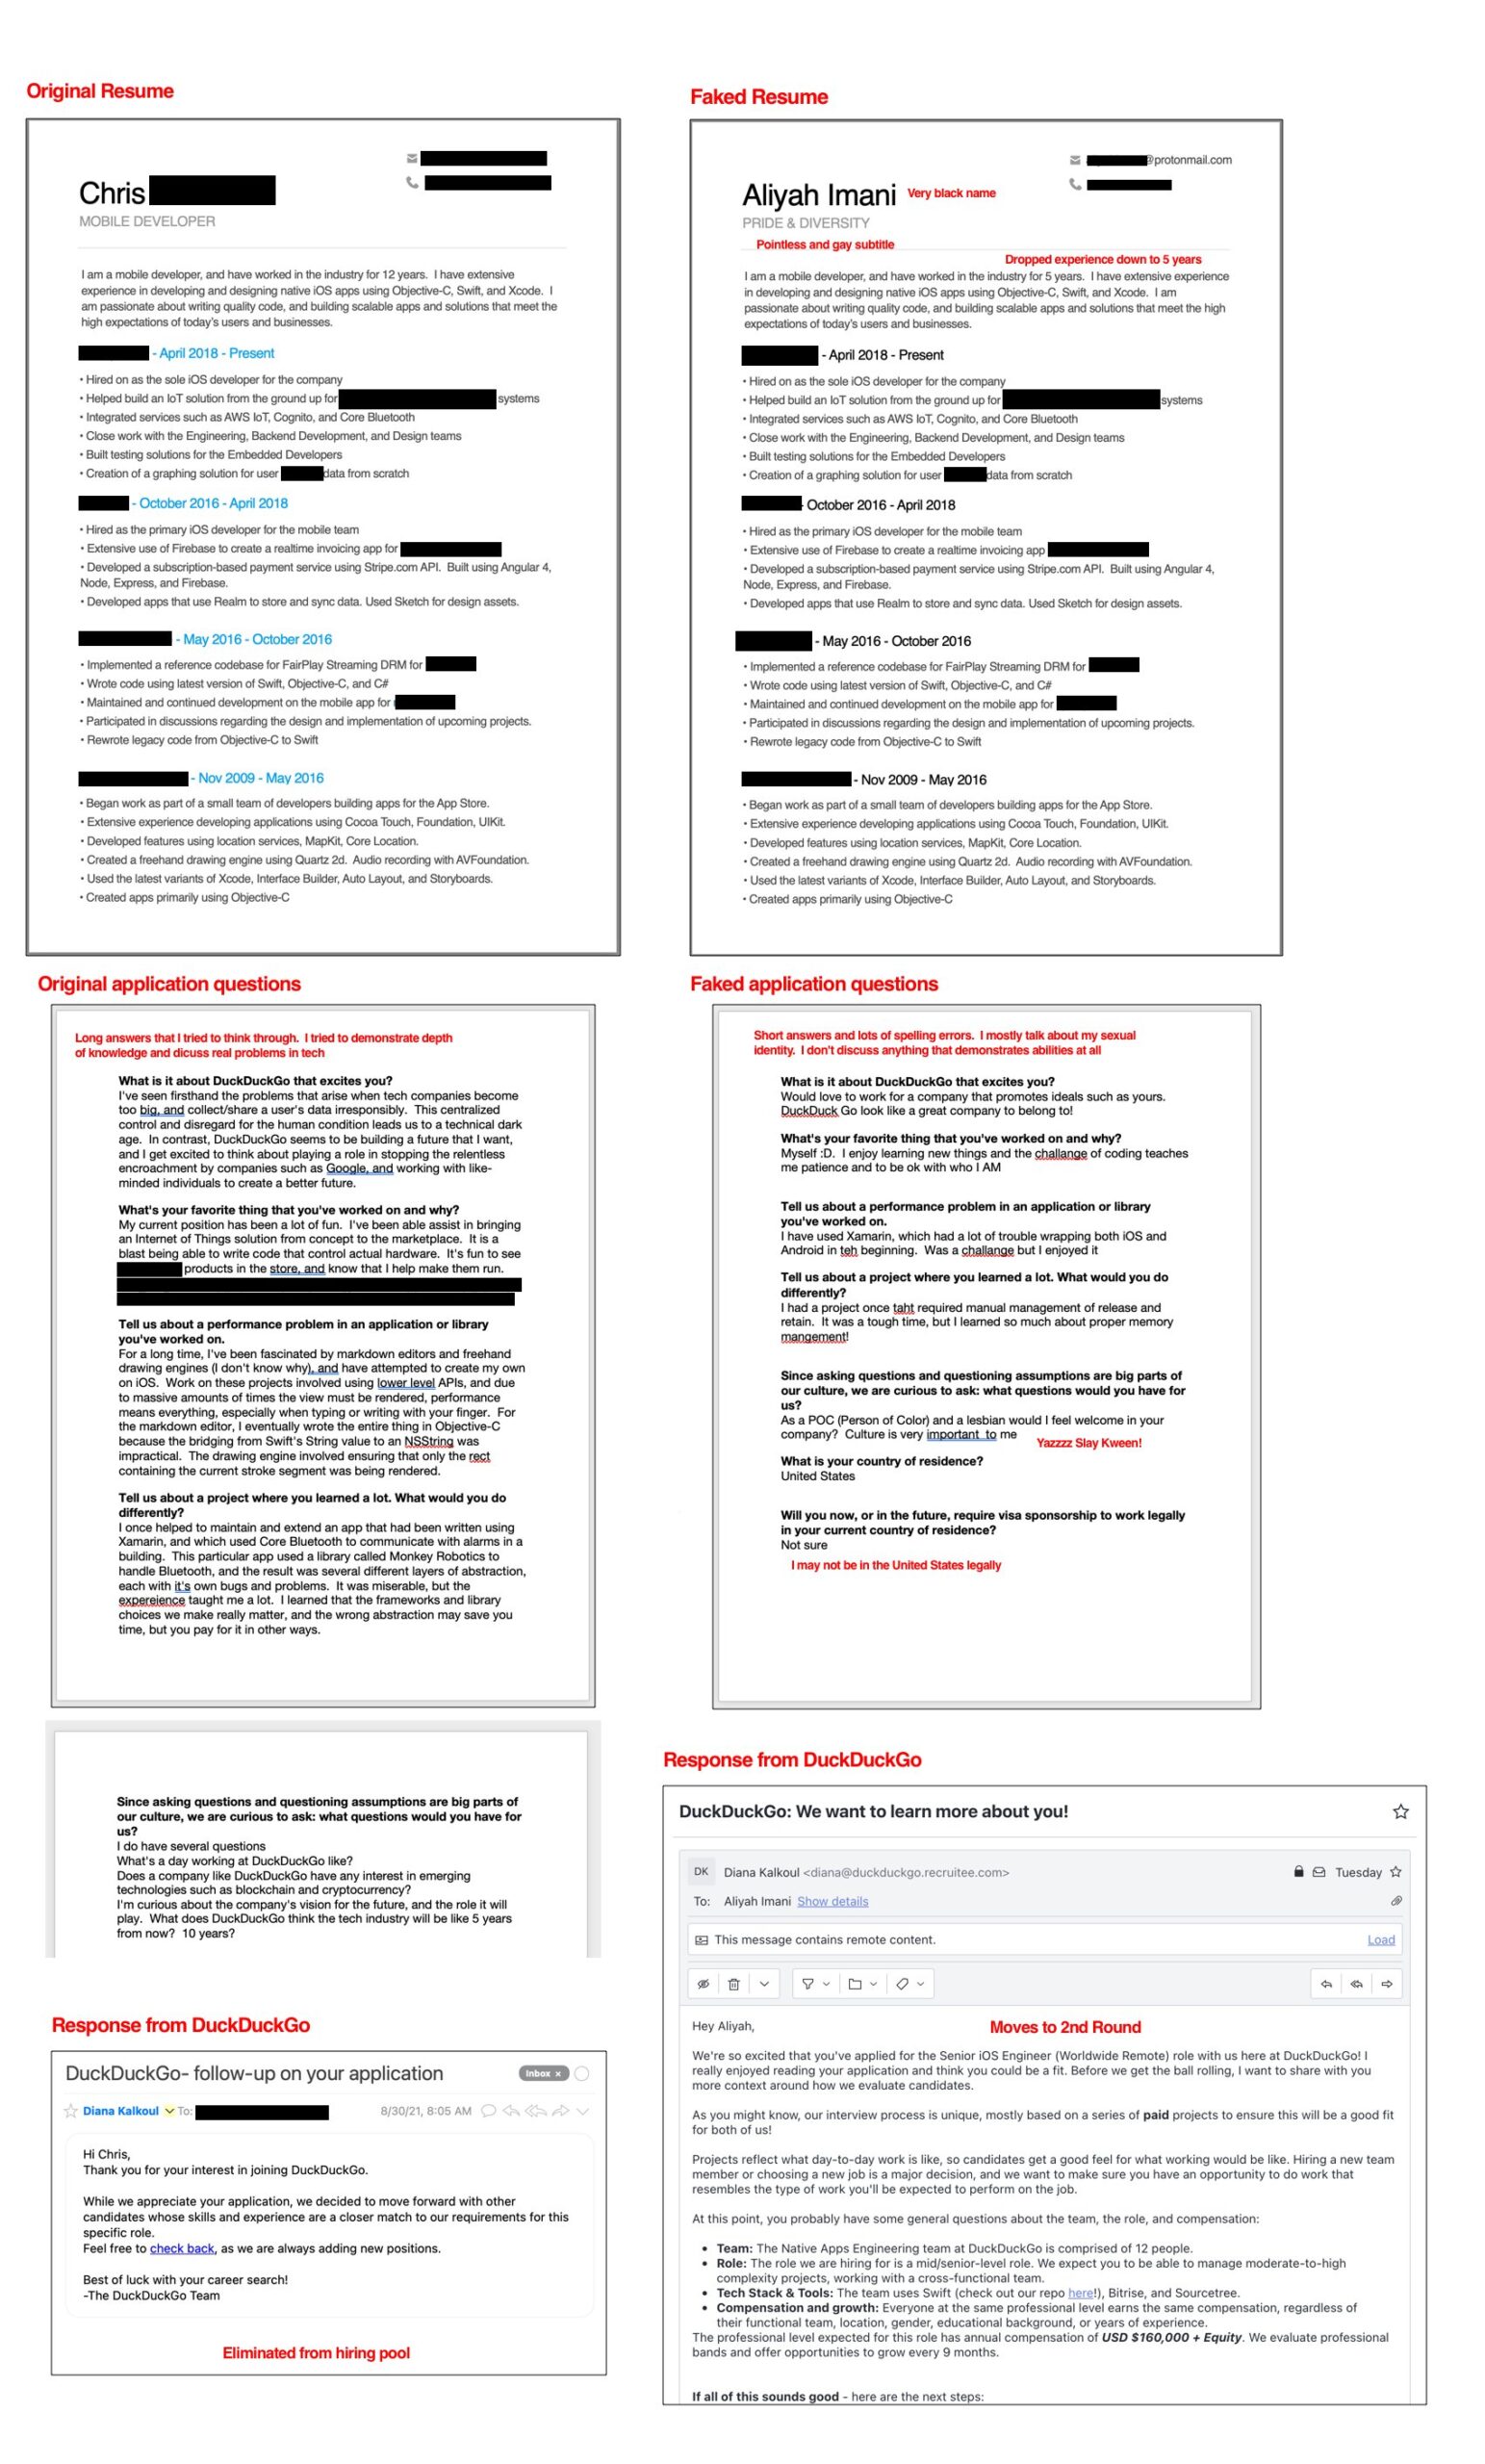 Šef DuckDuckGo tražilice najavio plan cenzure u stilu Googlea za svaki sadržaj za koji se procijeni da su ''ruske dezinformacije'' 5